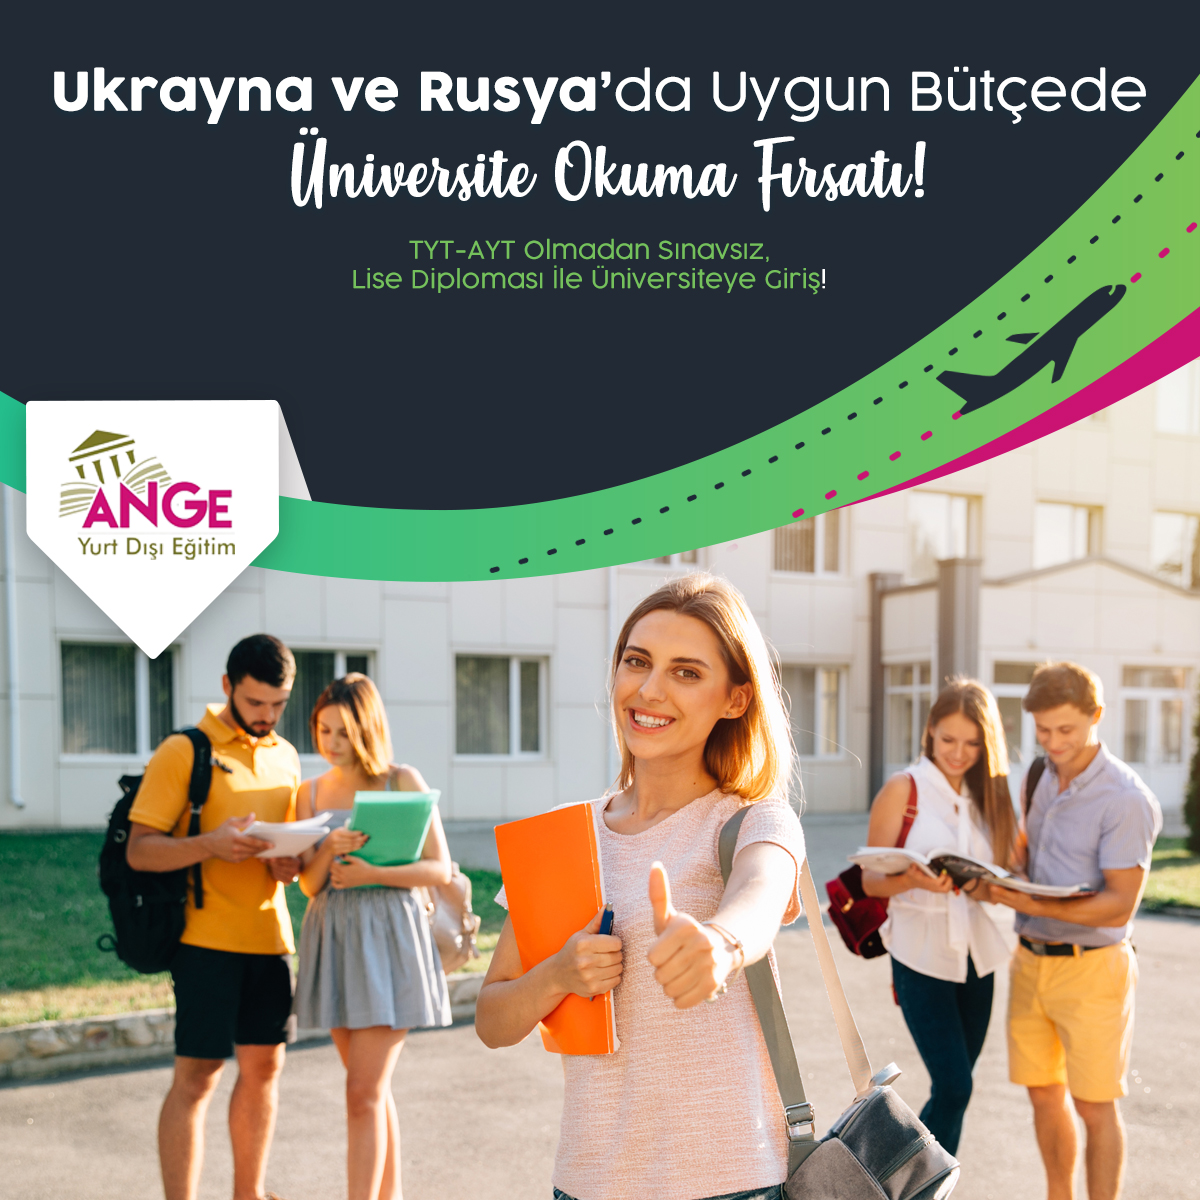 Ukrayna ve Rusya'da Uygun Bütçede Üniversite Okuma Fırsatı!